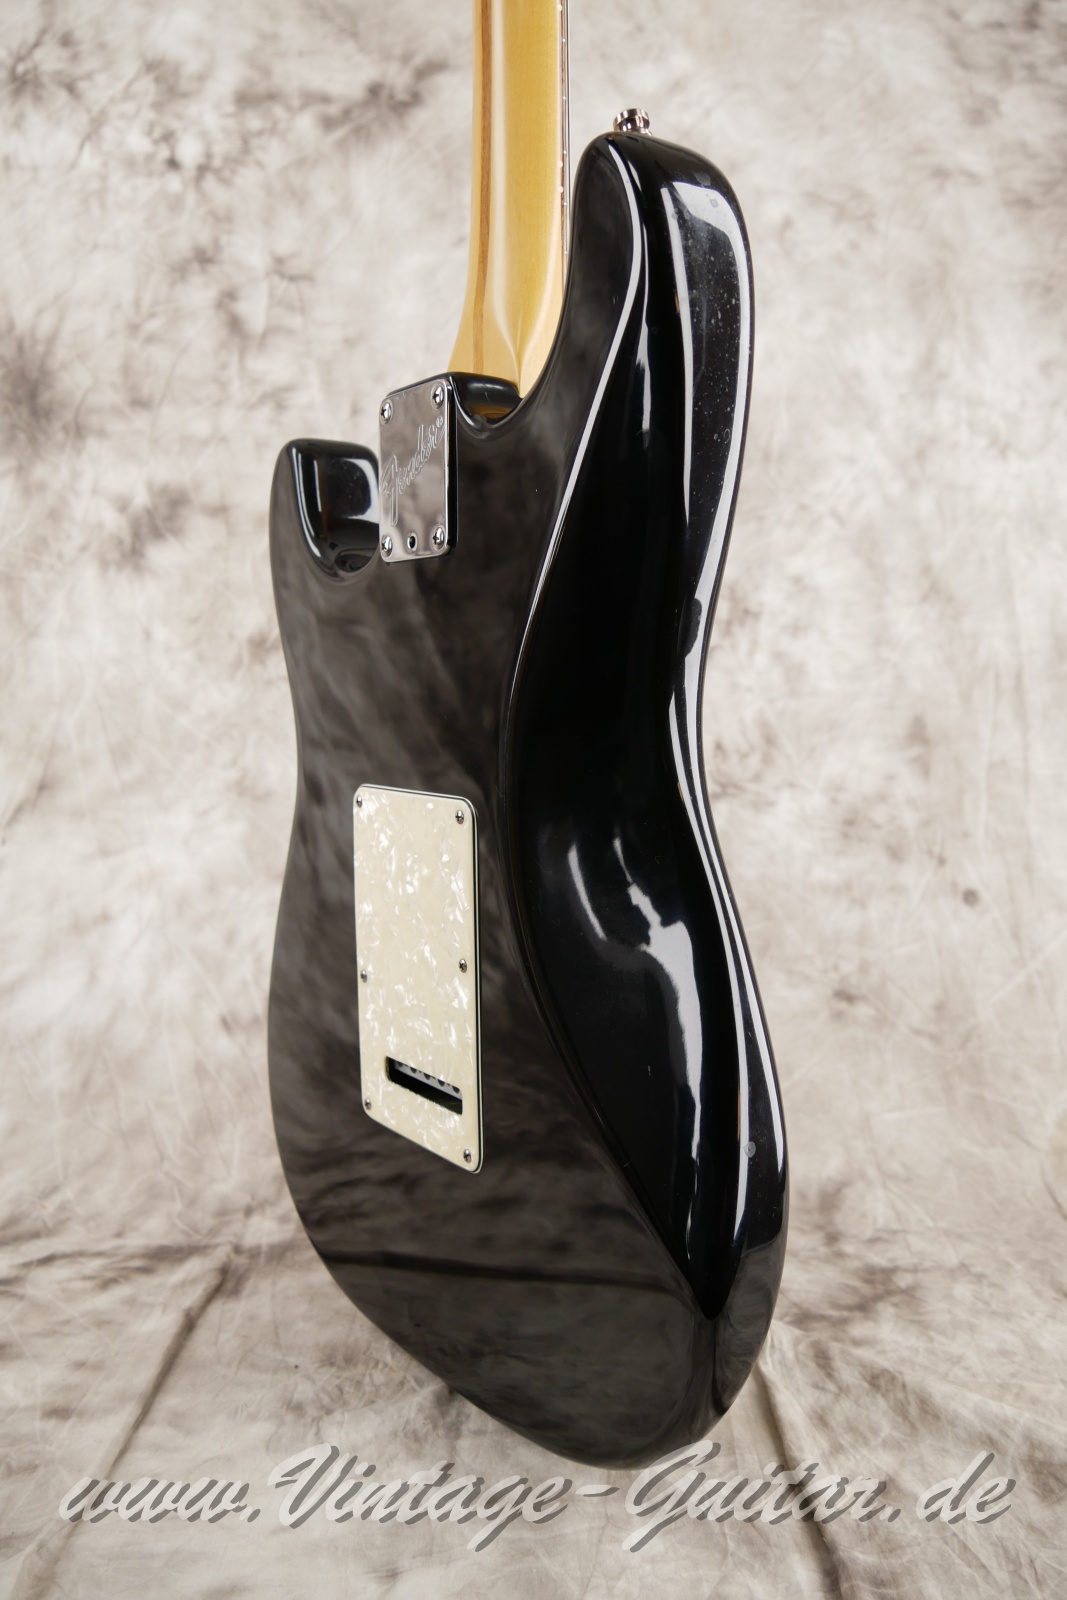 Fender_Stratocaster_US_Lonestar_1997_original_case_black_humbucker-012.jpg